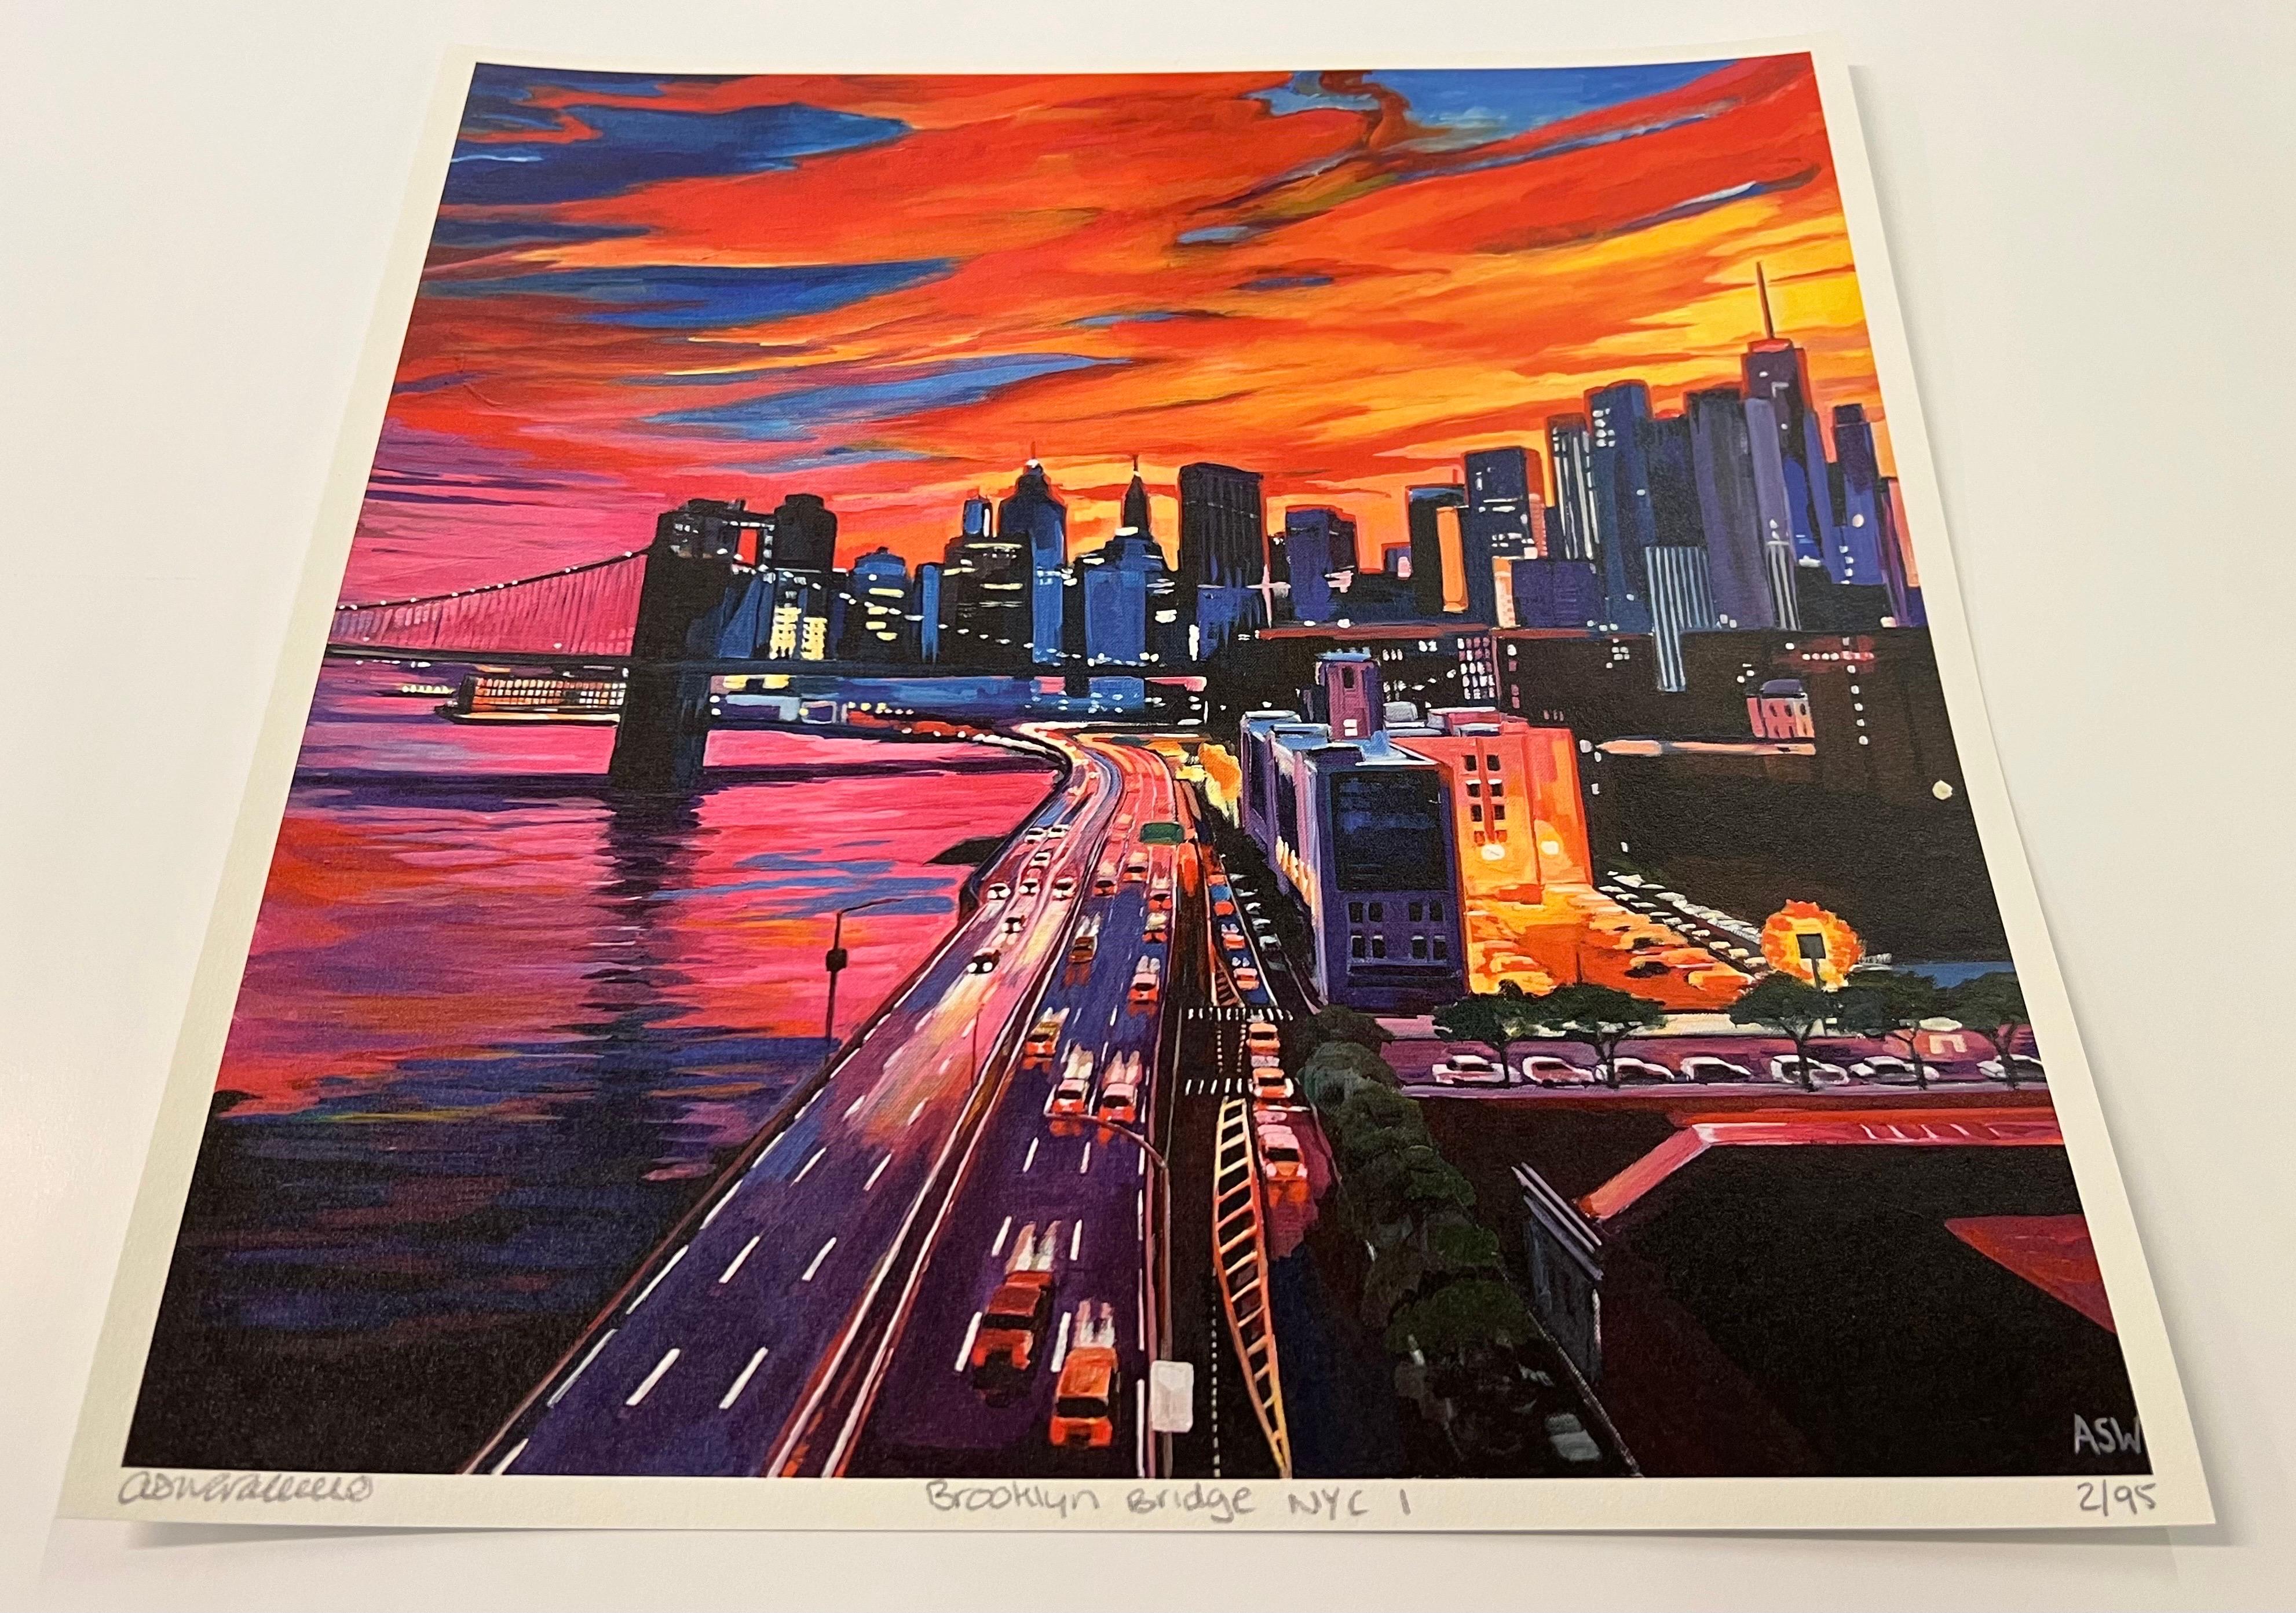 Impression en édition limitée du pont de Brooklyn New York City NYC Skyline États-Unis d'Amérique. Cette peinture représente la ligne d'horizon de New York avec le pont de Brooklyn sur fond d'un magnifique coucher de soleil orange et rouge depuis un